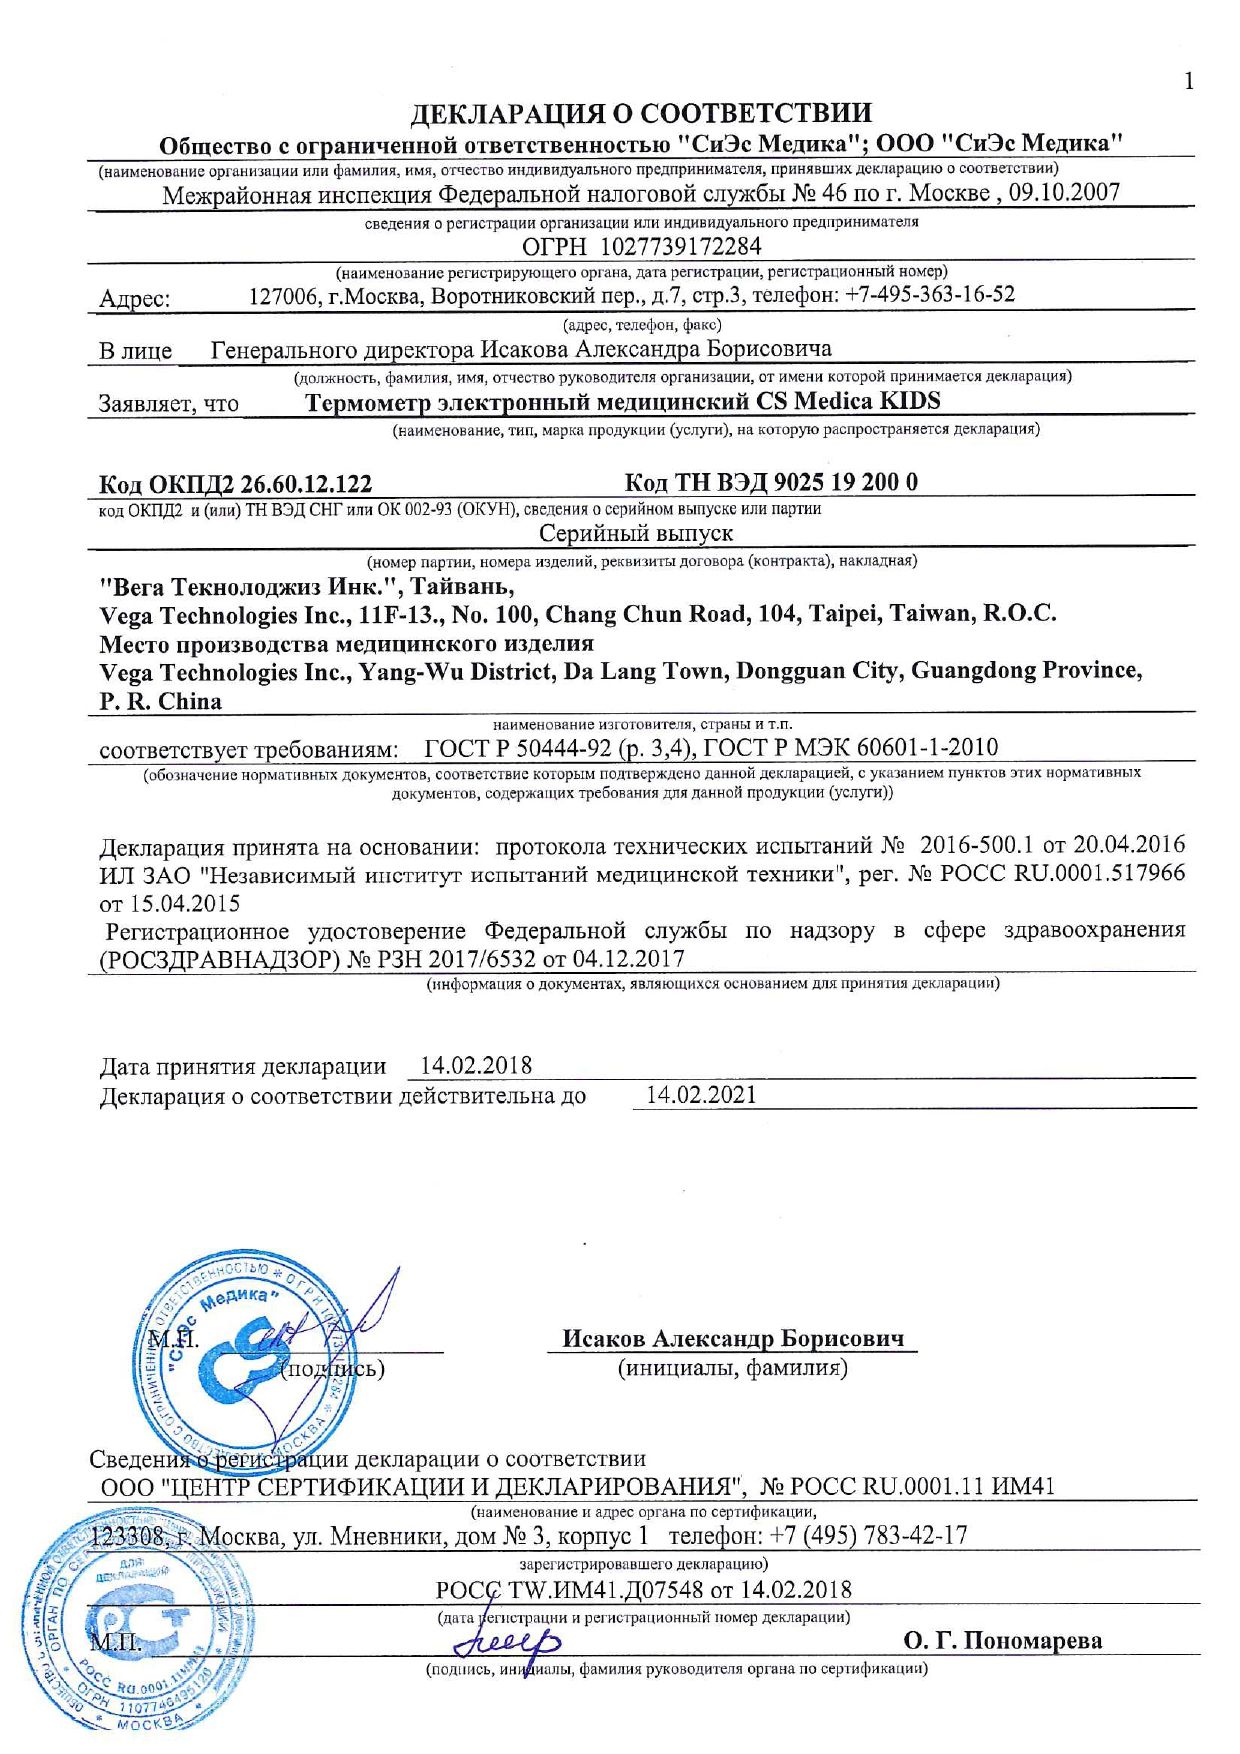 Термометр электронный CS Medica Kids CS - 82 - P собачка сертификат